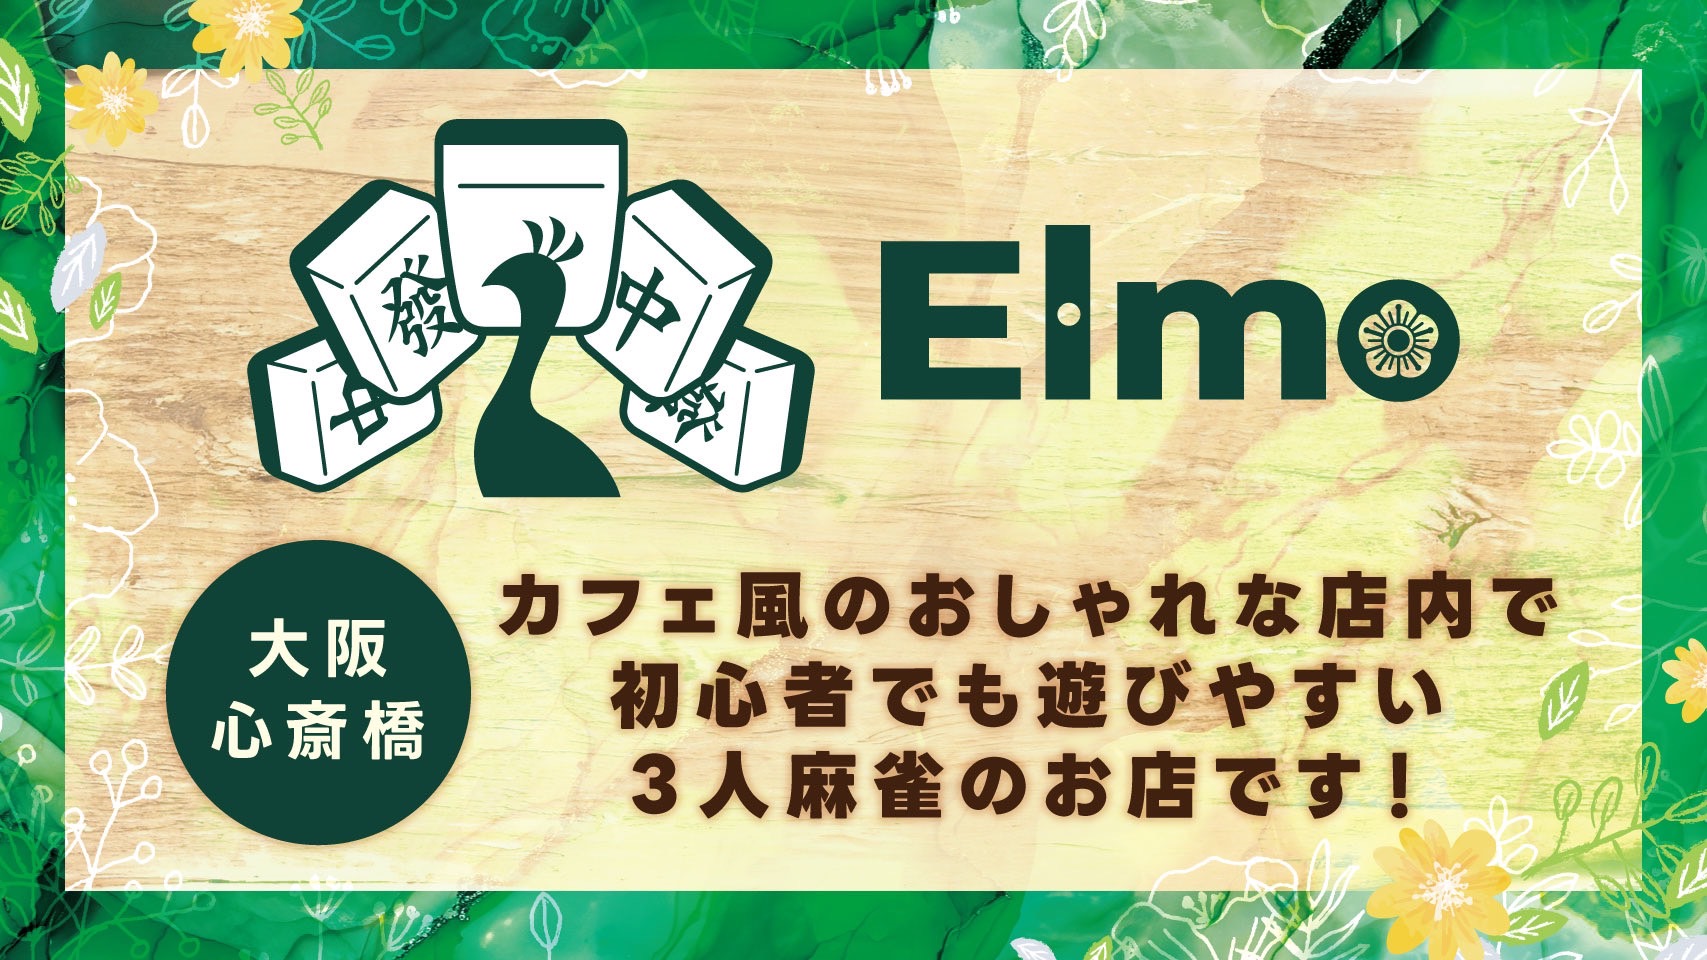 麻雀エルモ-elmo- バナー